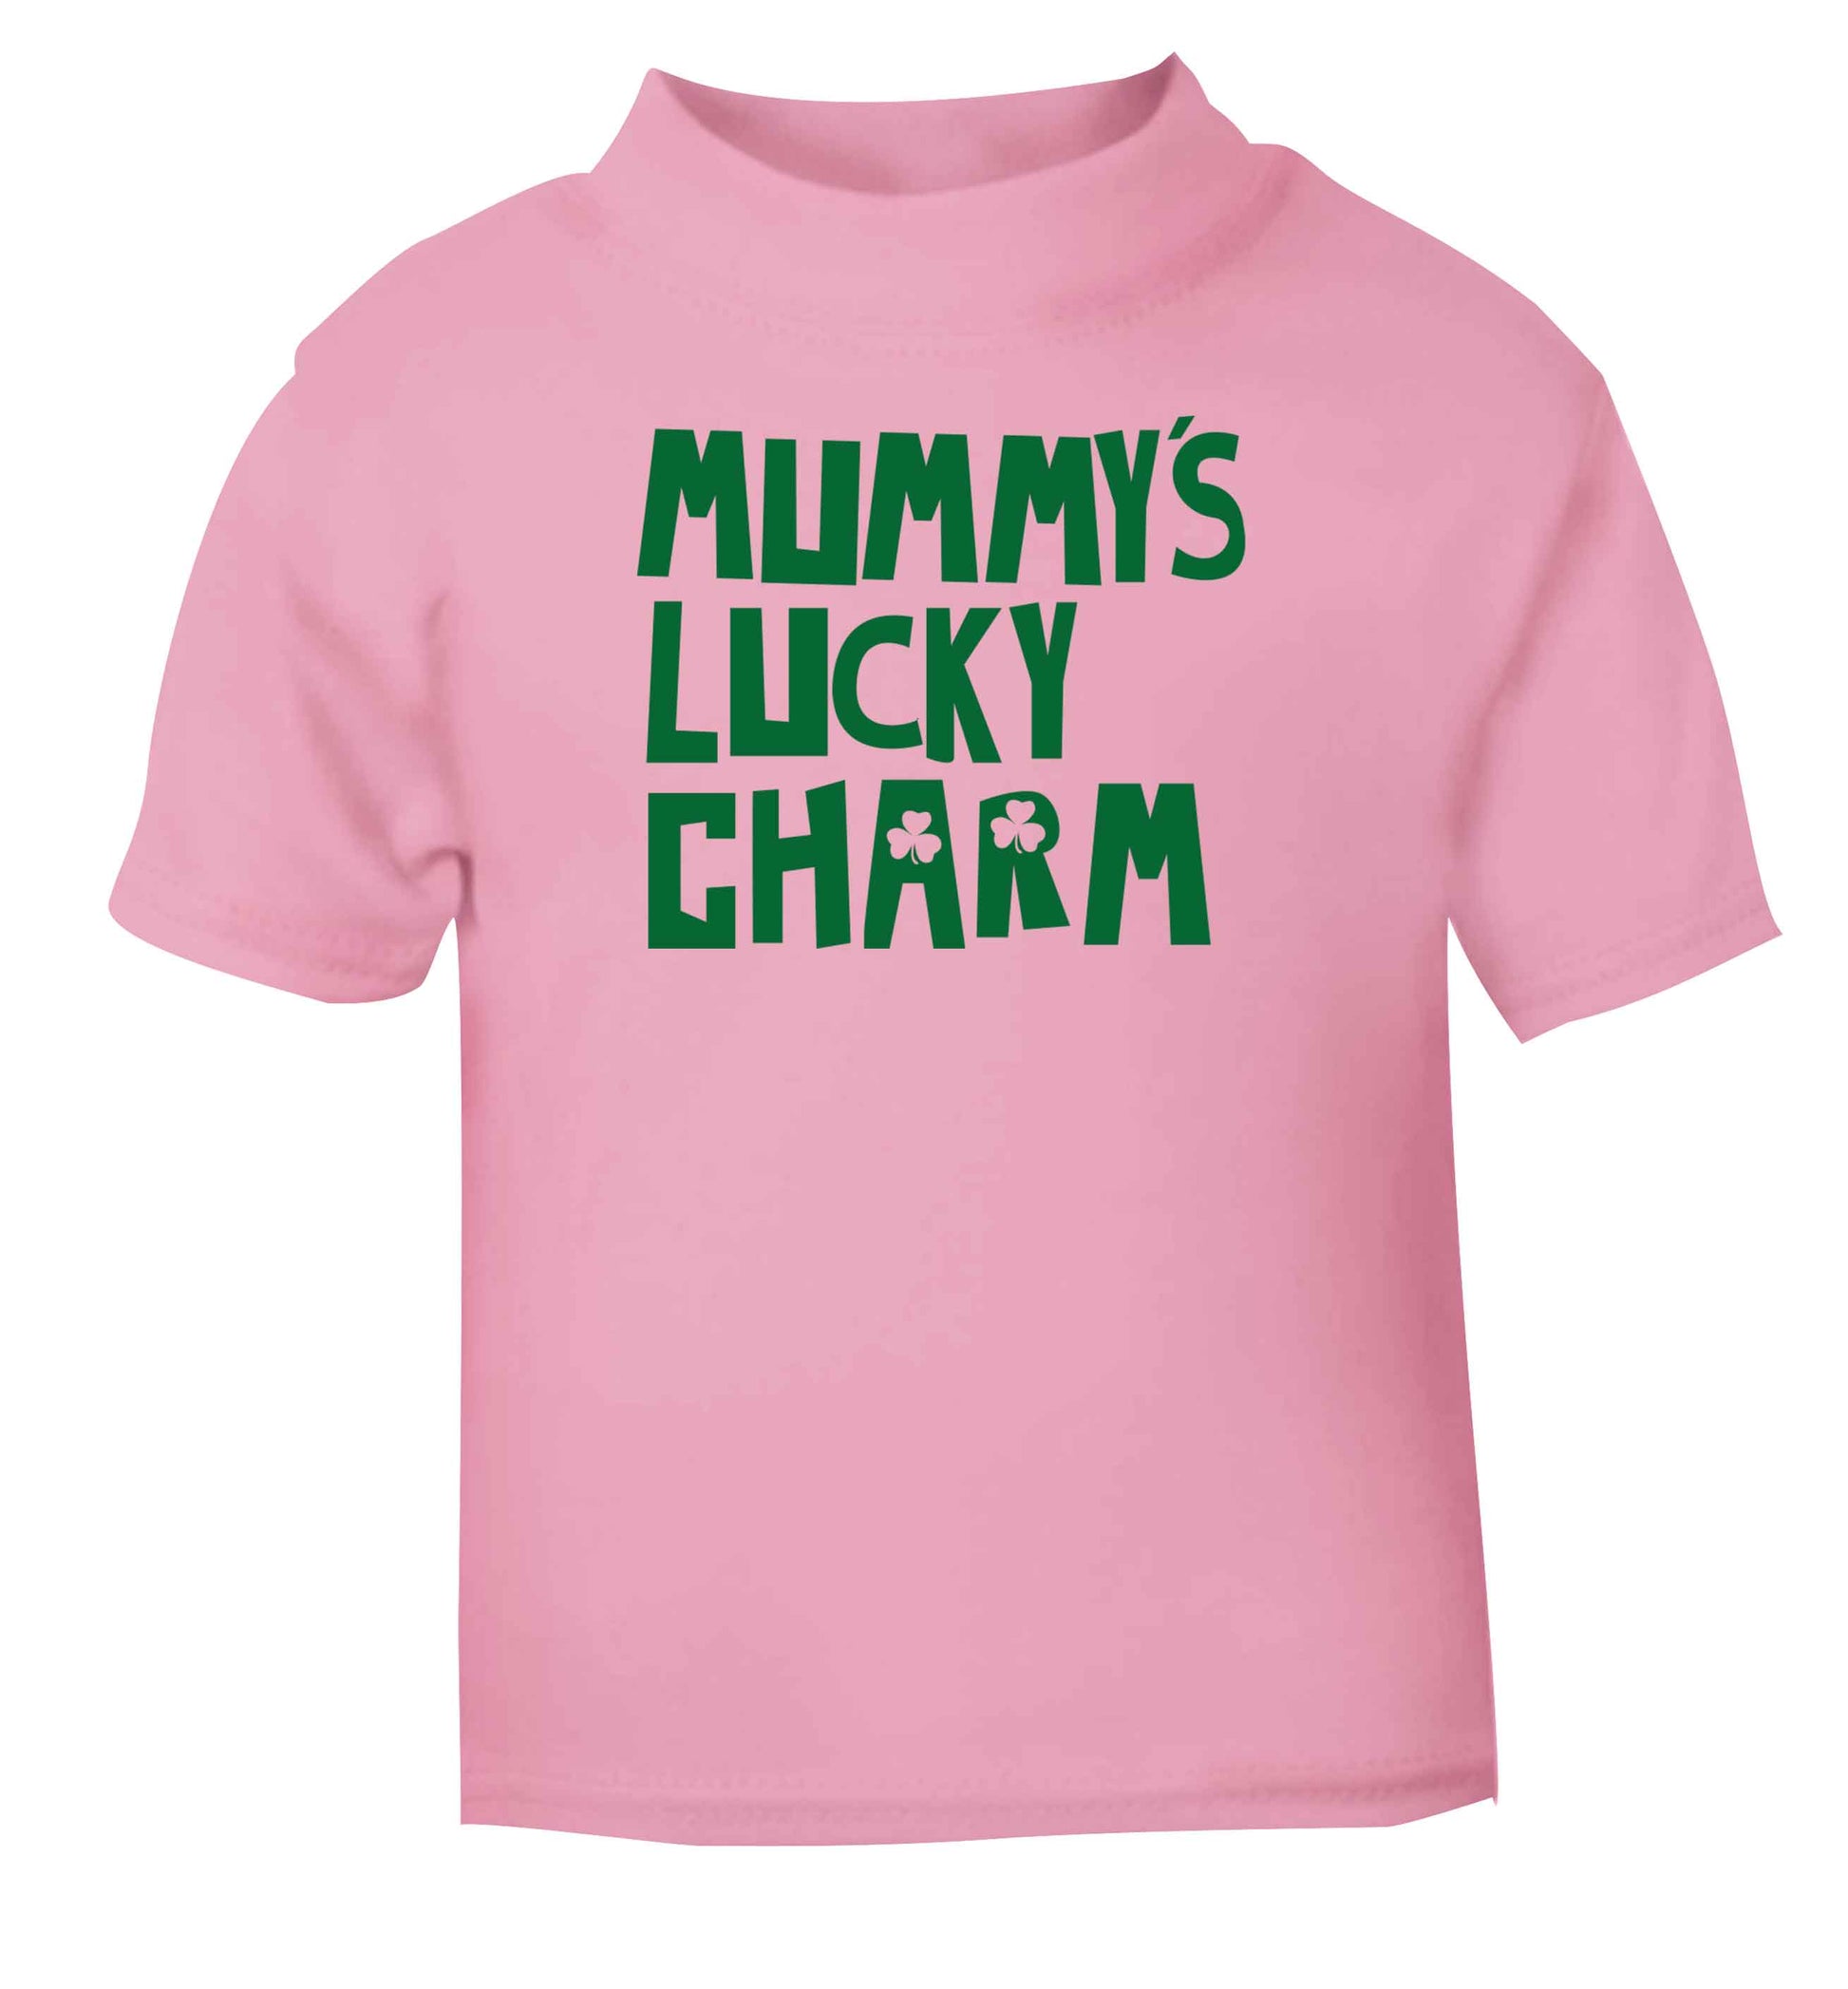 Mummy's lucky charm Children's light pink Tshirt 12-13 Years